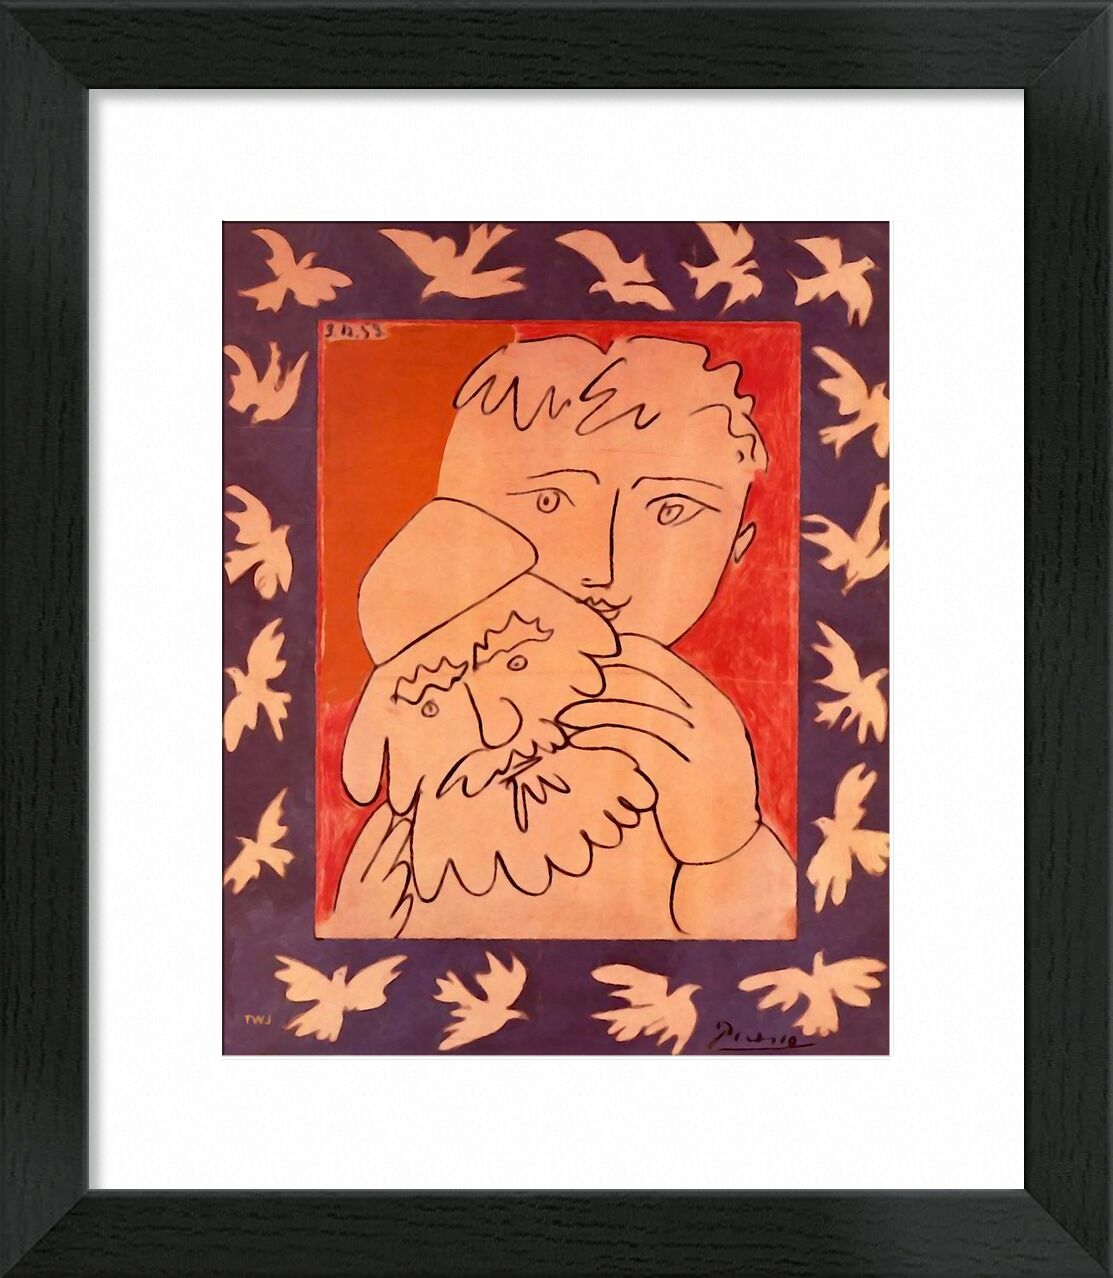 New Year - Picasso desde Bellas artes, Prodi Art, Año Nuevo, abstracto, pintura, picasso